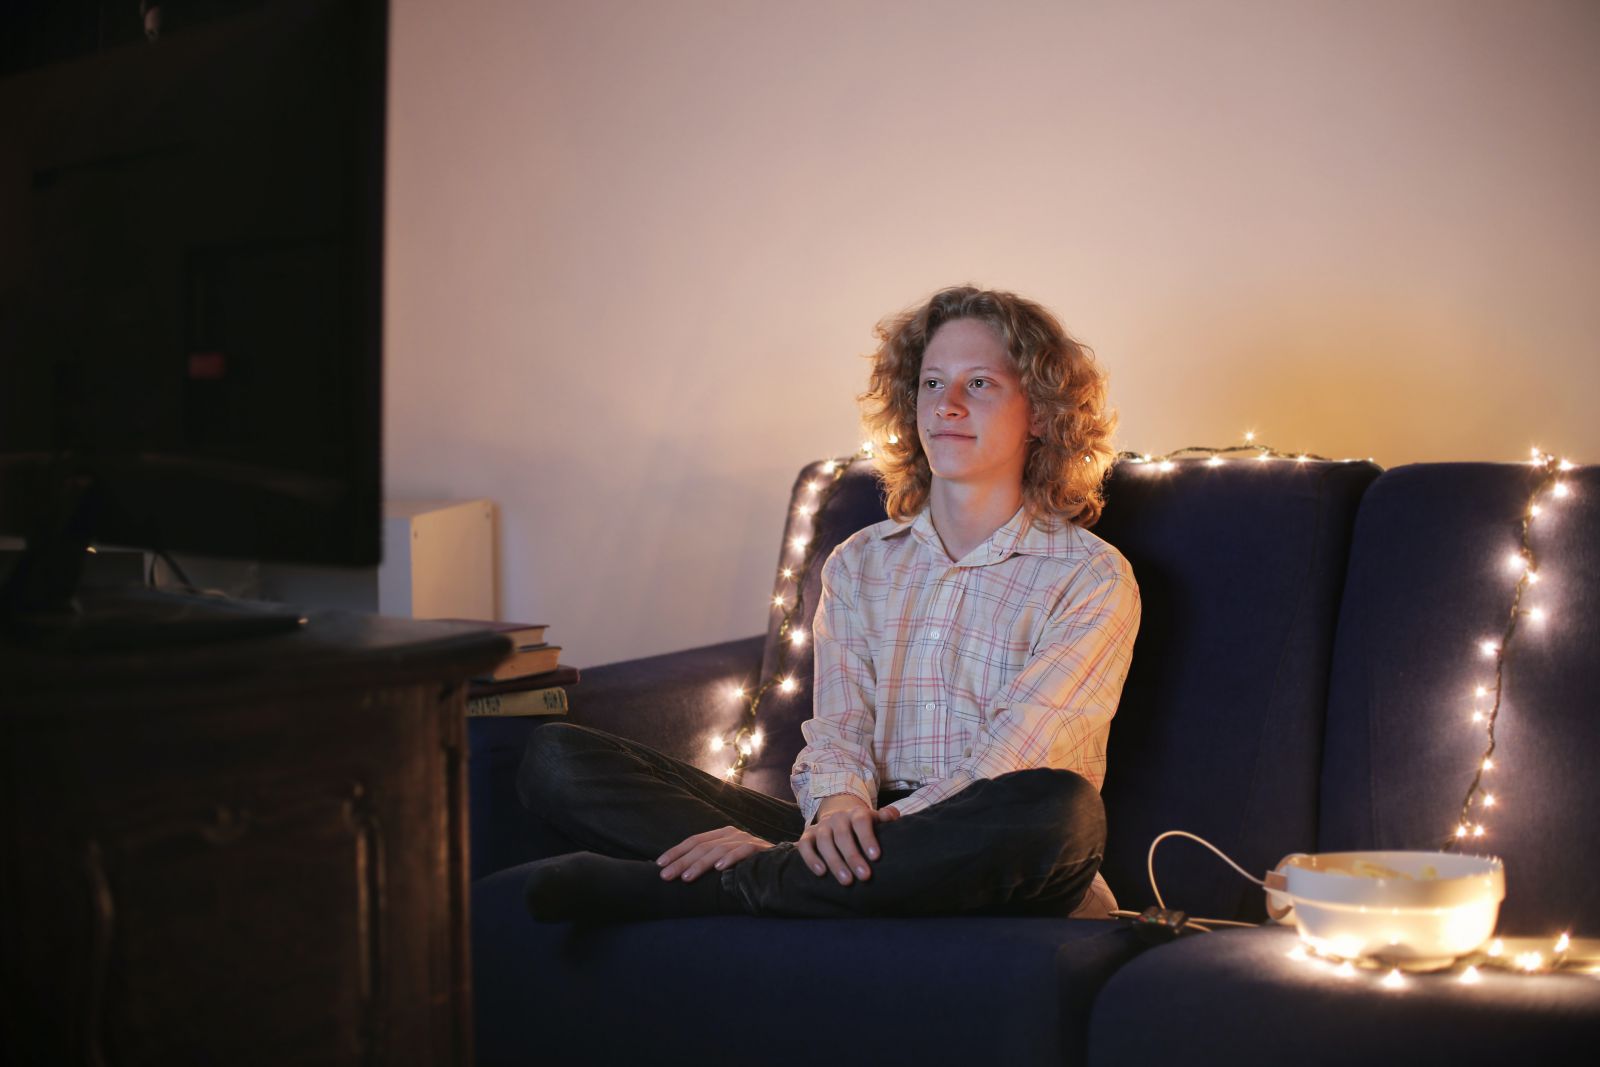 Jovem branco sentado de pernas cruzadas em frente à televisão.